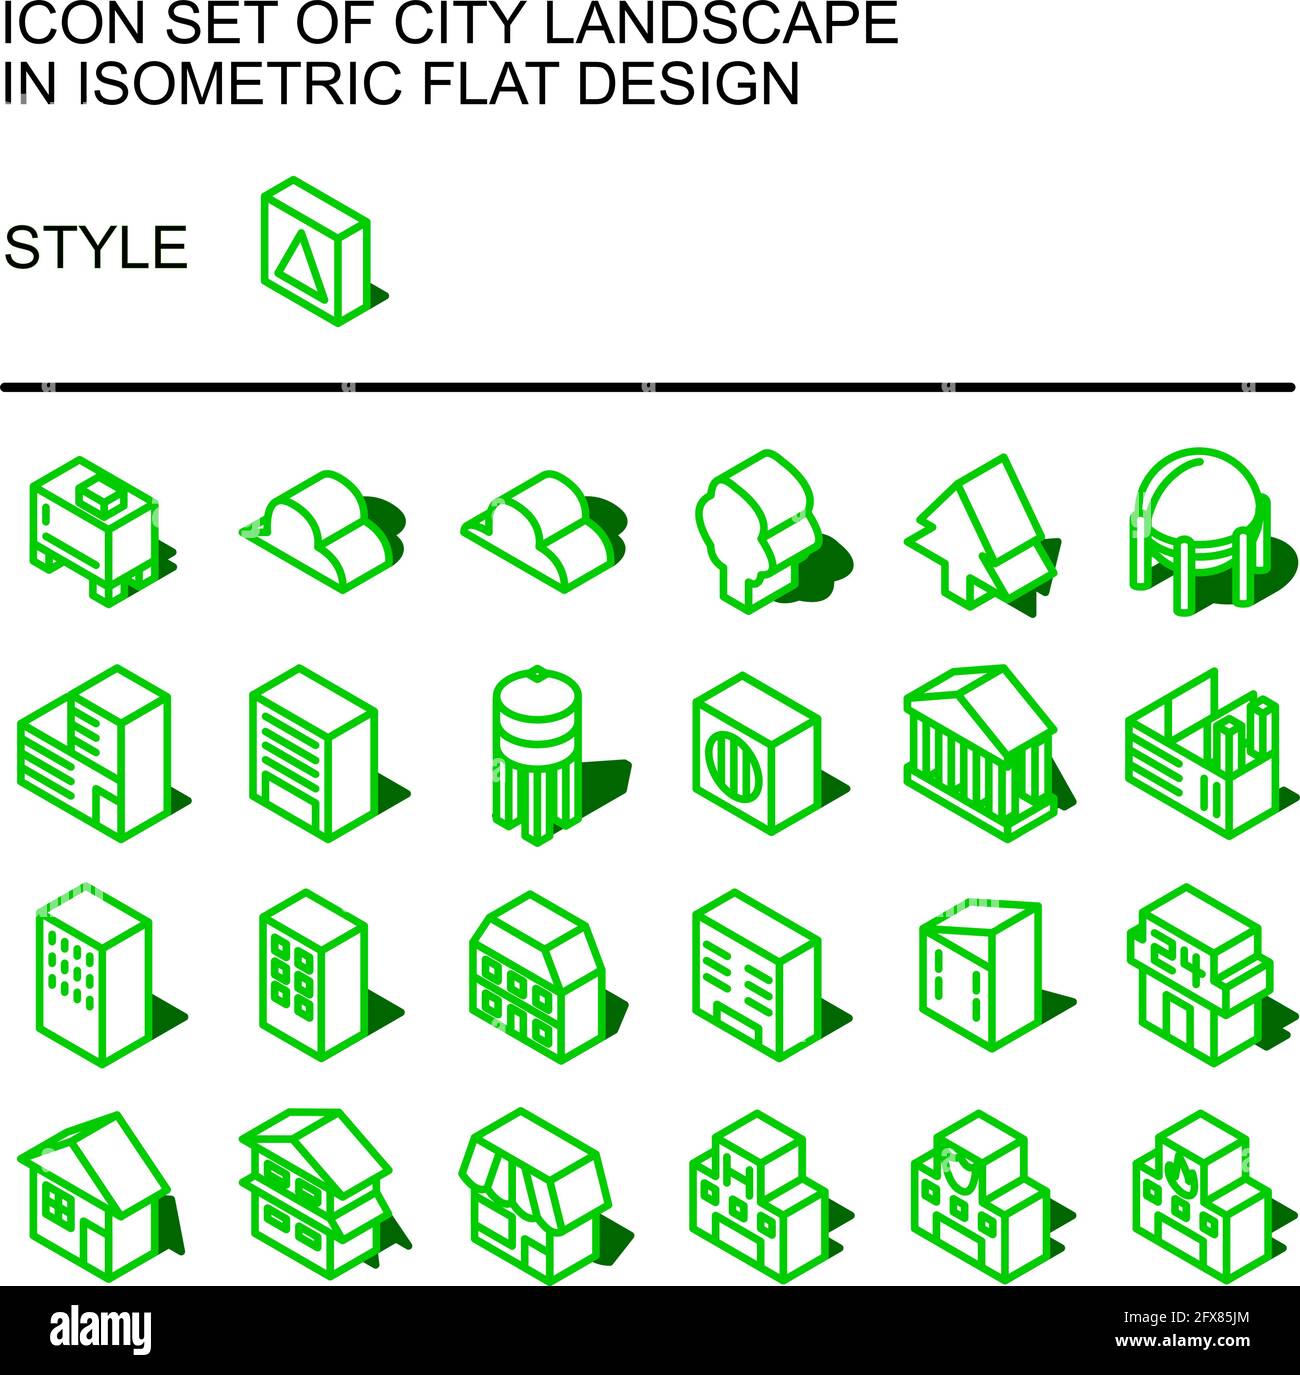 Icona del paesaggio urbano impostata in un design piatto isometrico con linee verdi, riempimenti bianchi, forma di un'ombra. Illustrazione Vettoriale